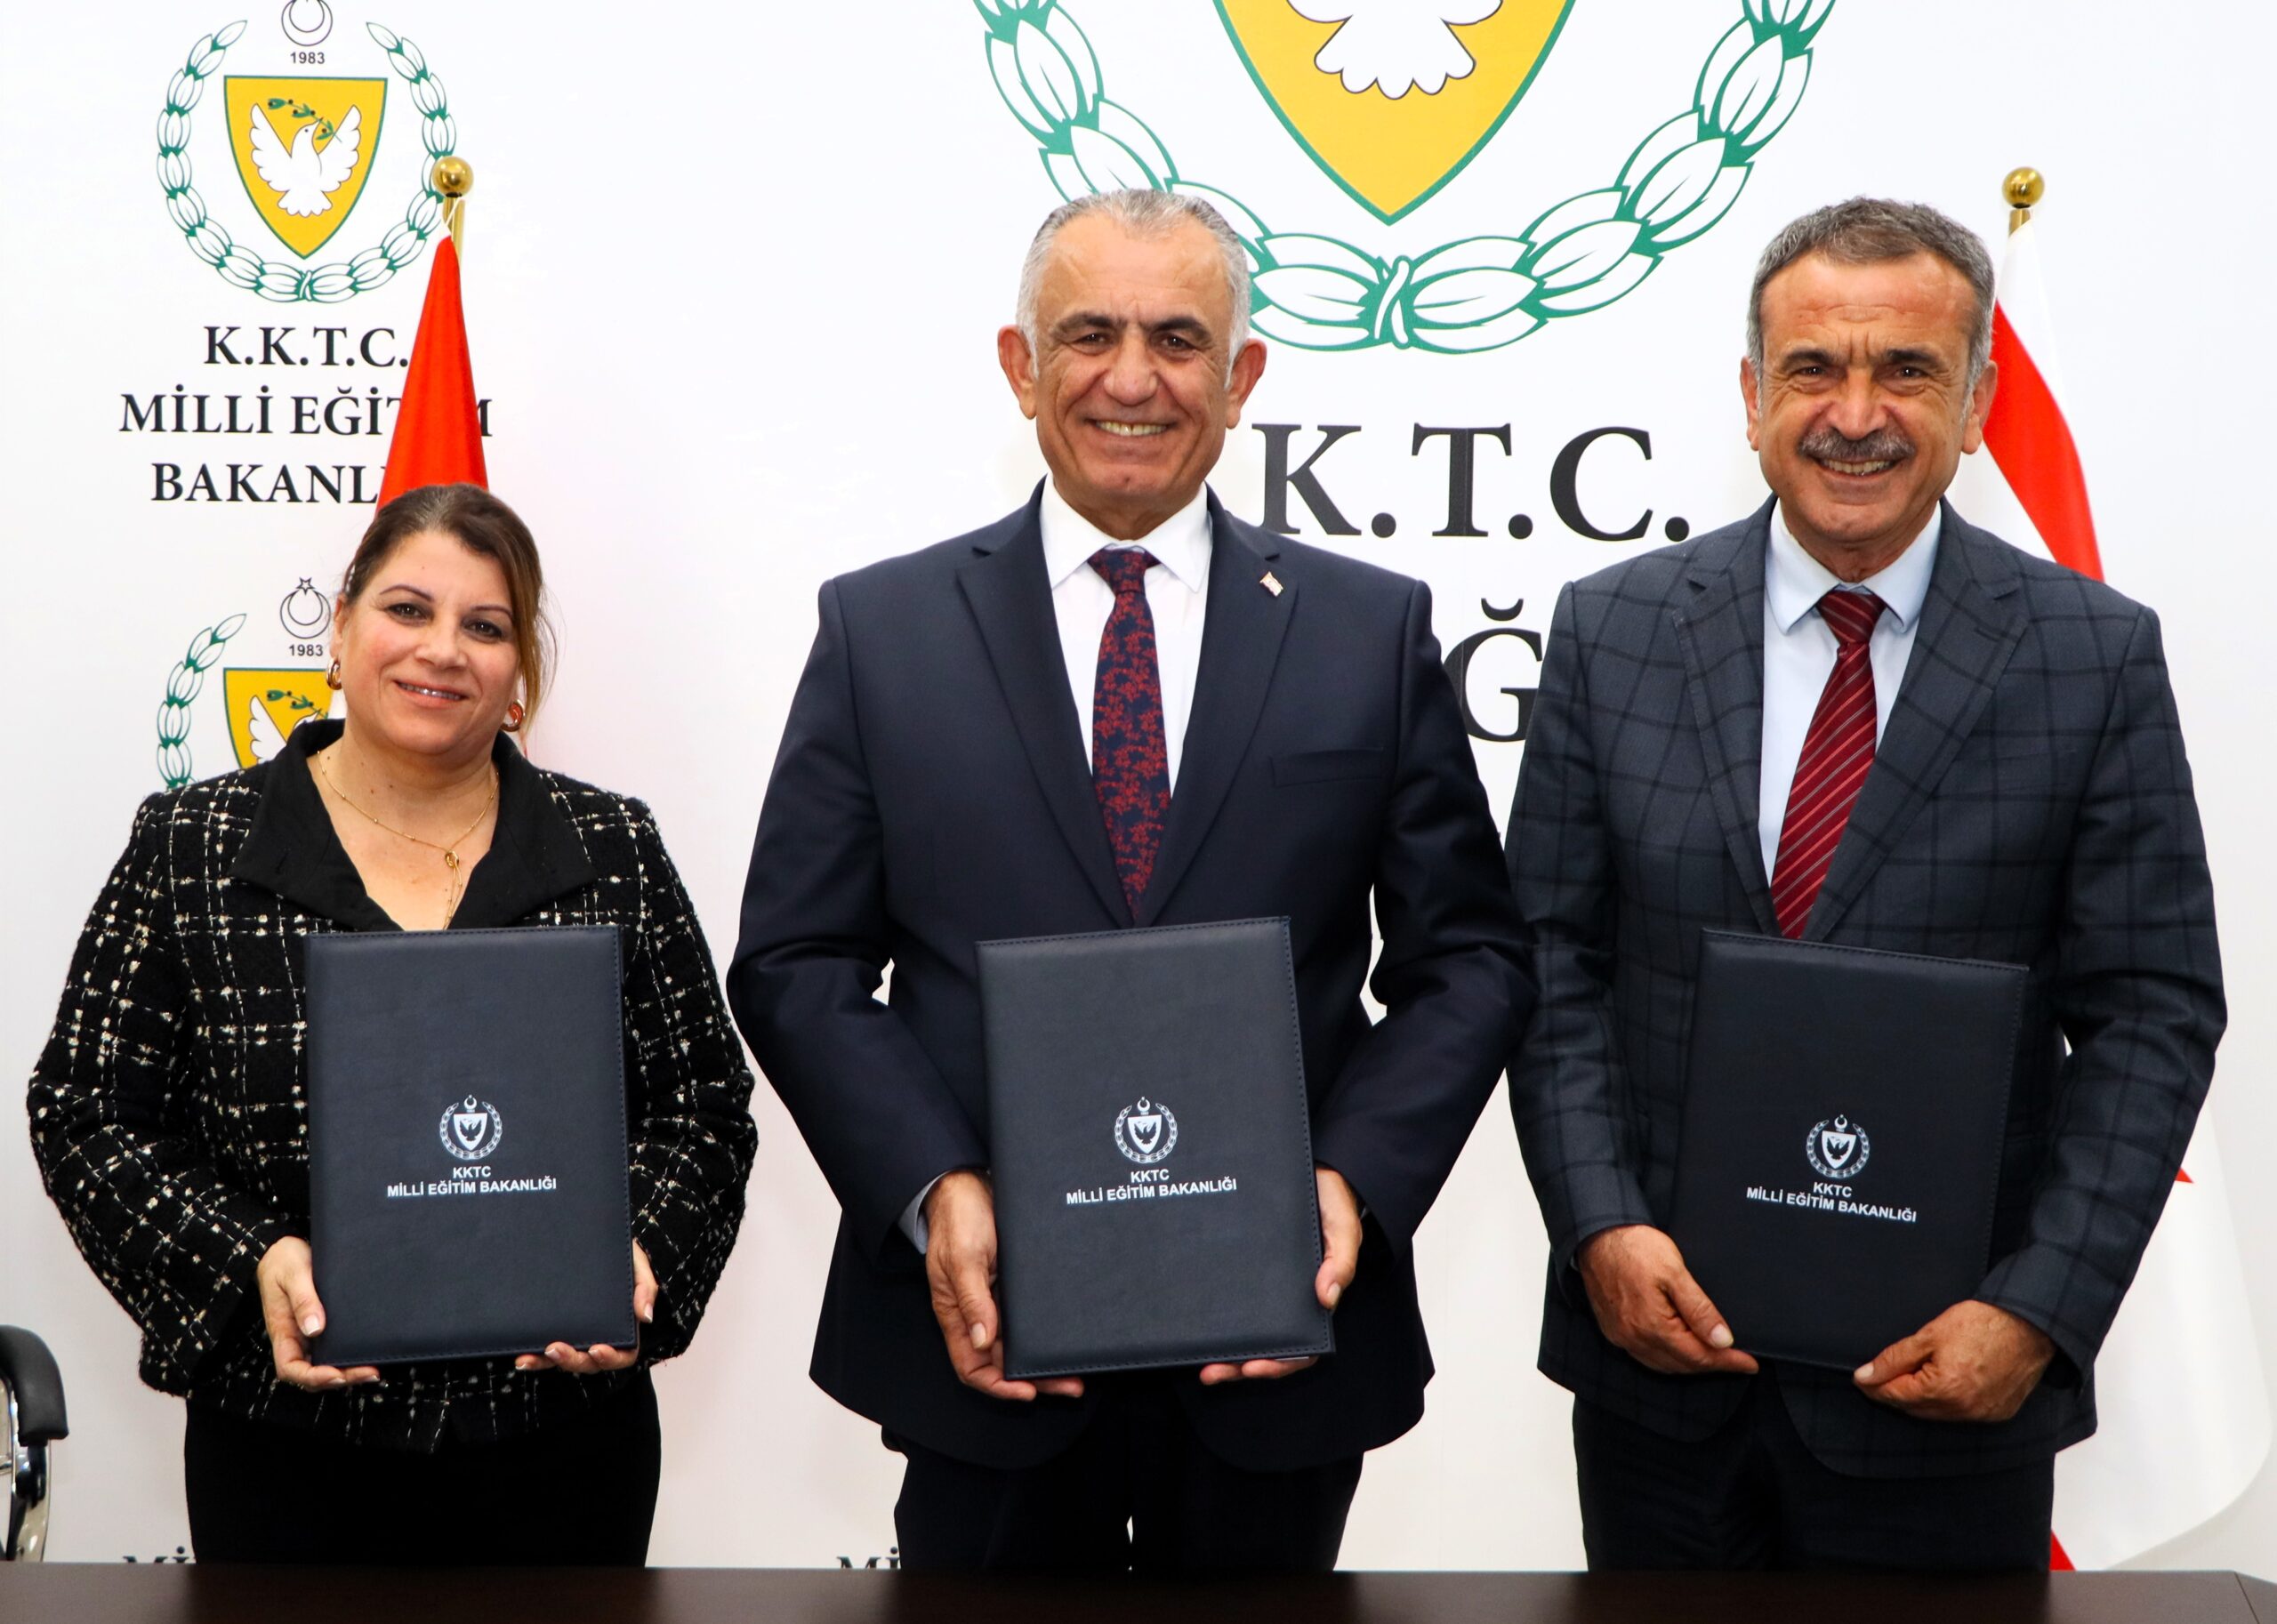 Mesleki Teknik Öğretim Dairesi ile Gazimağusa Belediyesi arasında iş birliği protokolü imzalandı – BRTK